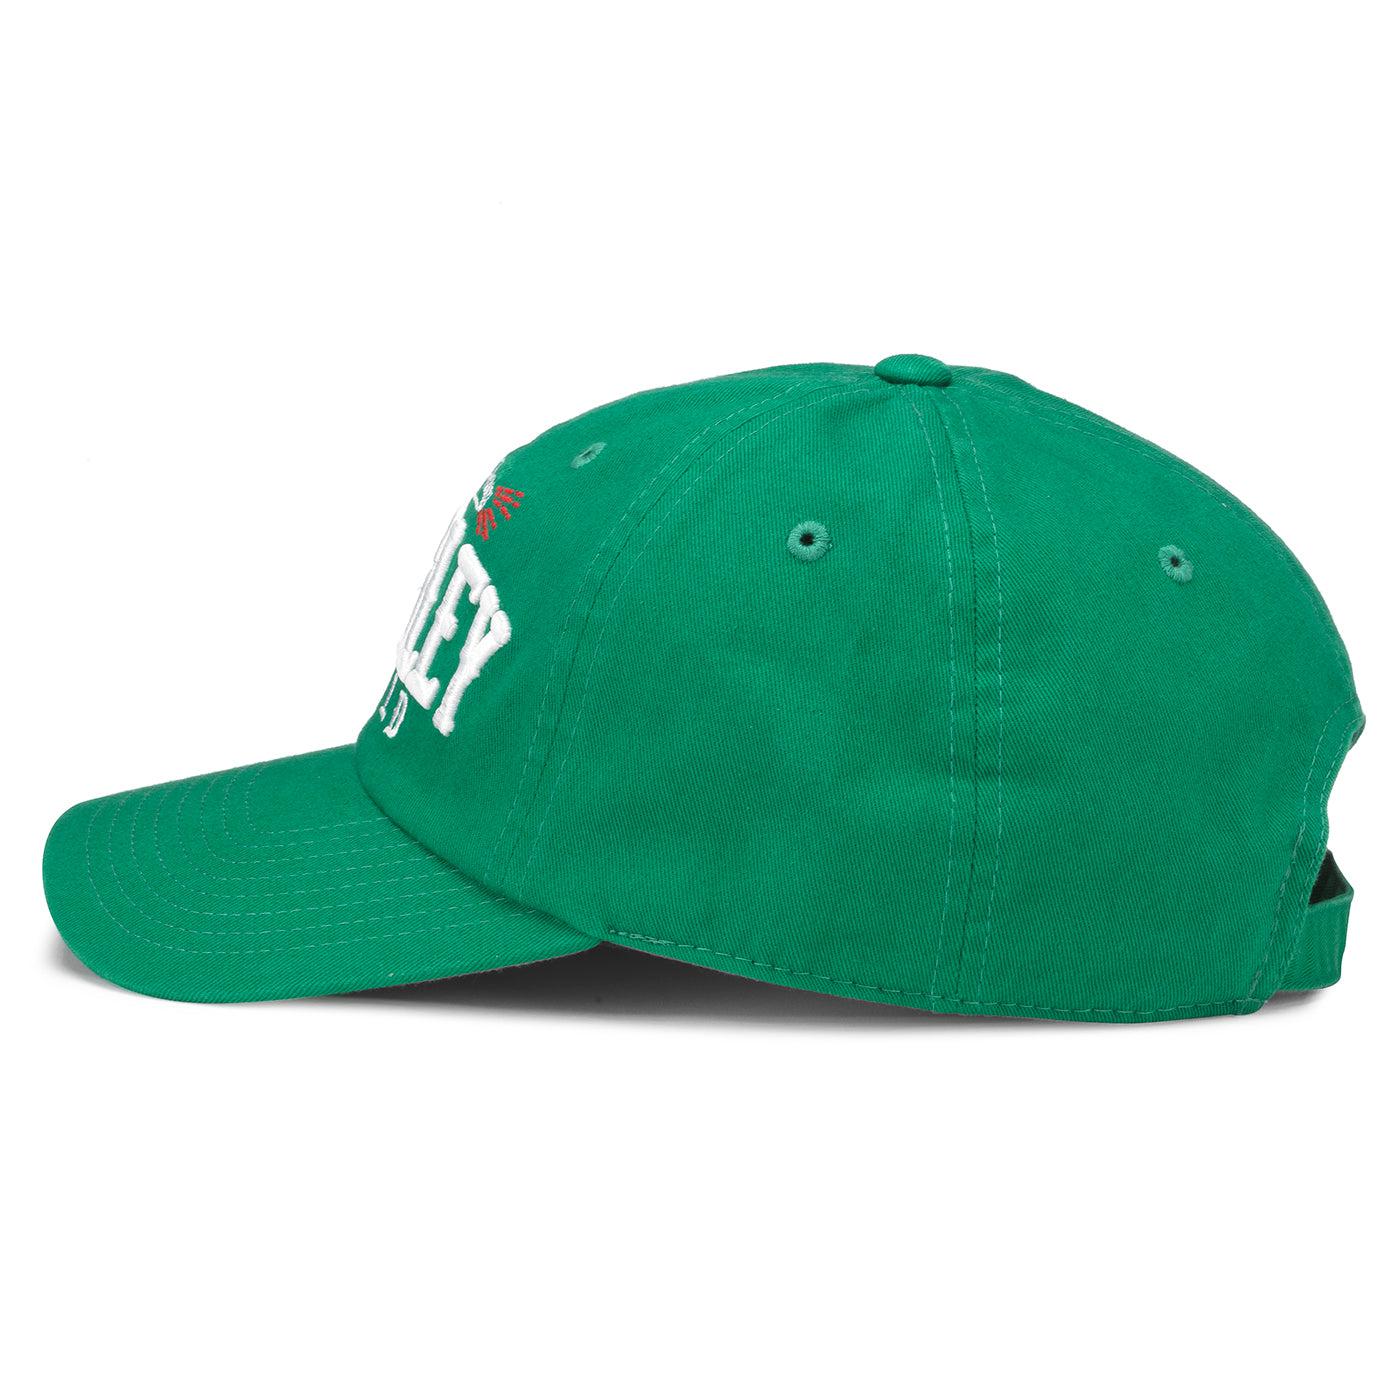 WRIGLEY FIELD AMERICAN NEEDLE KELLY GREEN CAP